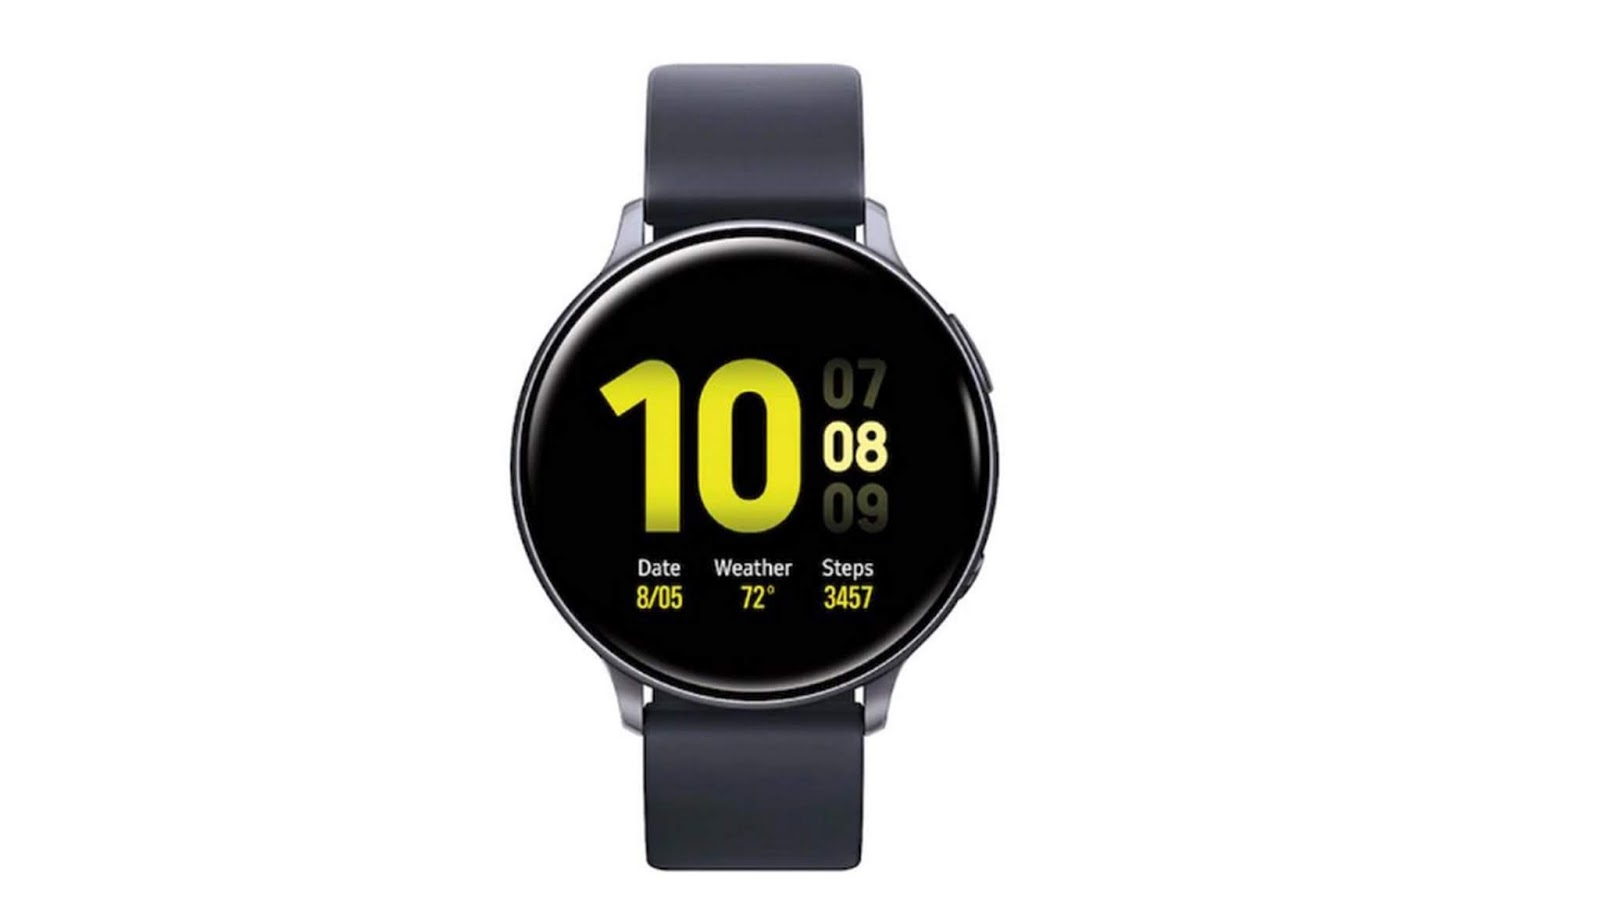 âˆšâŠ• [NEW PROMO] Harga Jam Tangan Samsung Smartwatch Terbaru 2020